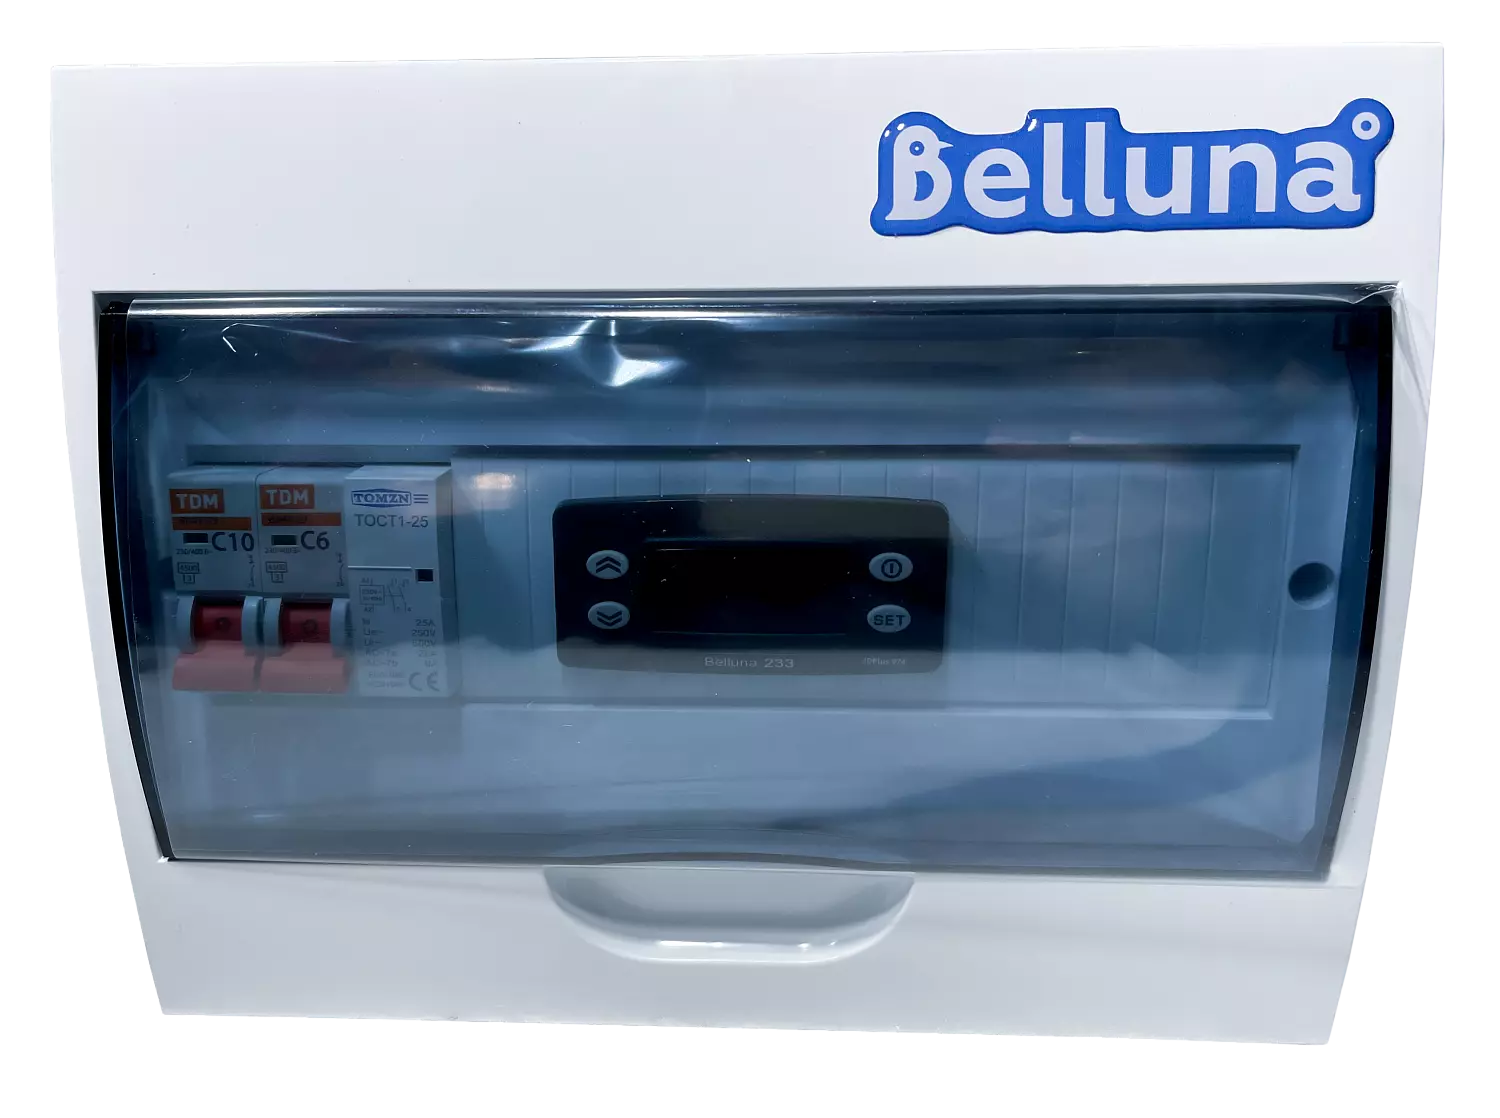 сплит-система Belluna U316 Самара